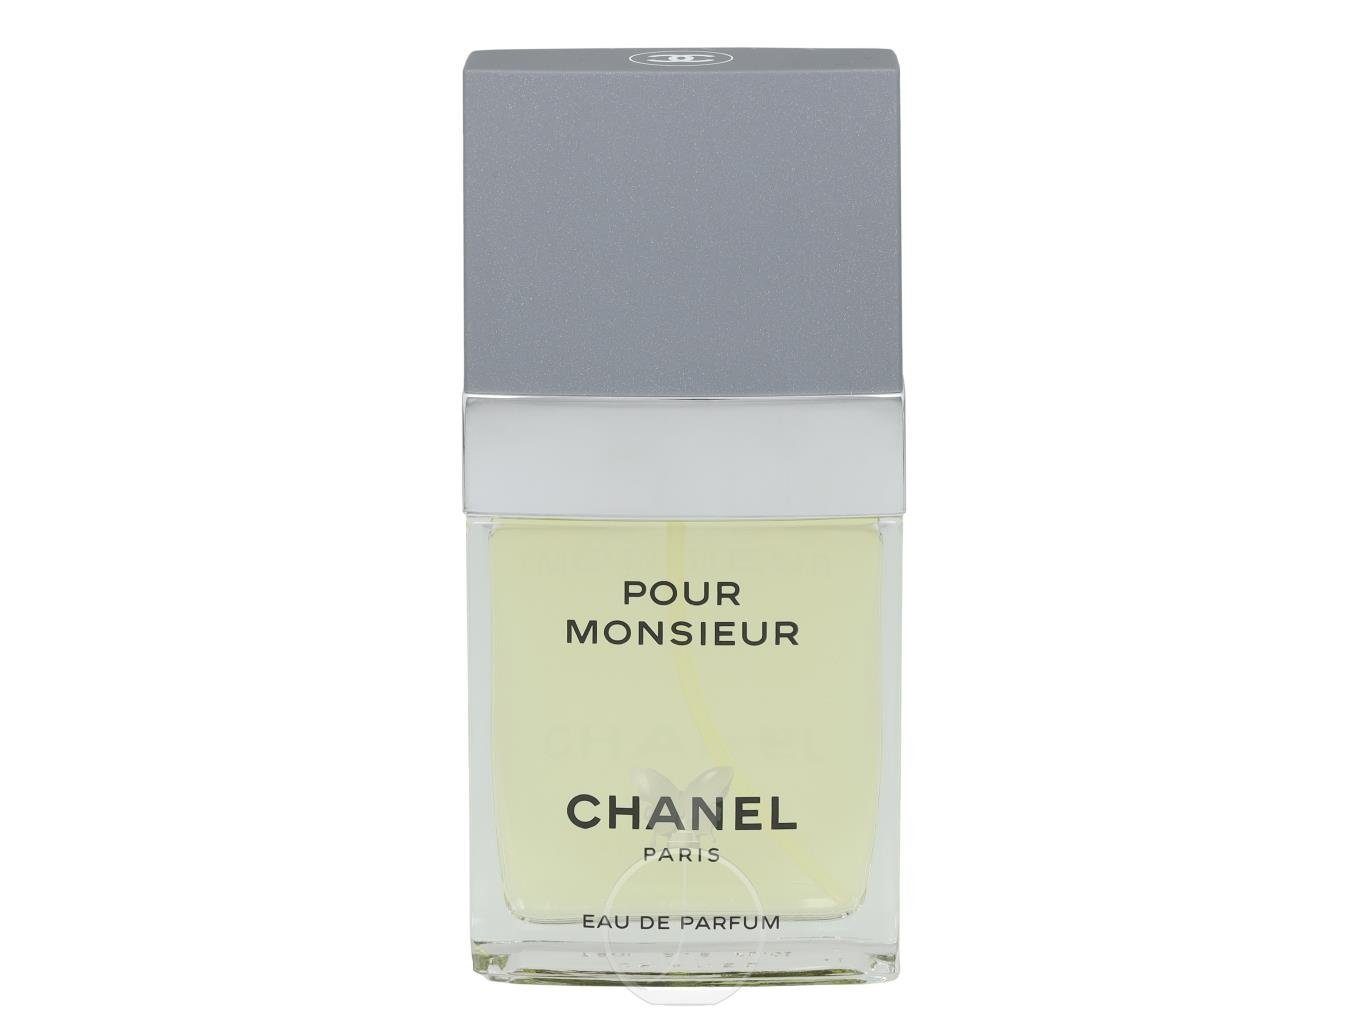 CHANEL Eau Parfum ml de Parfum Chanel Monsieur 75 de Pour Eau